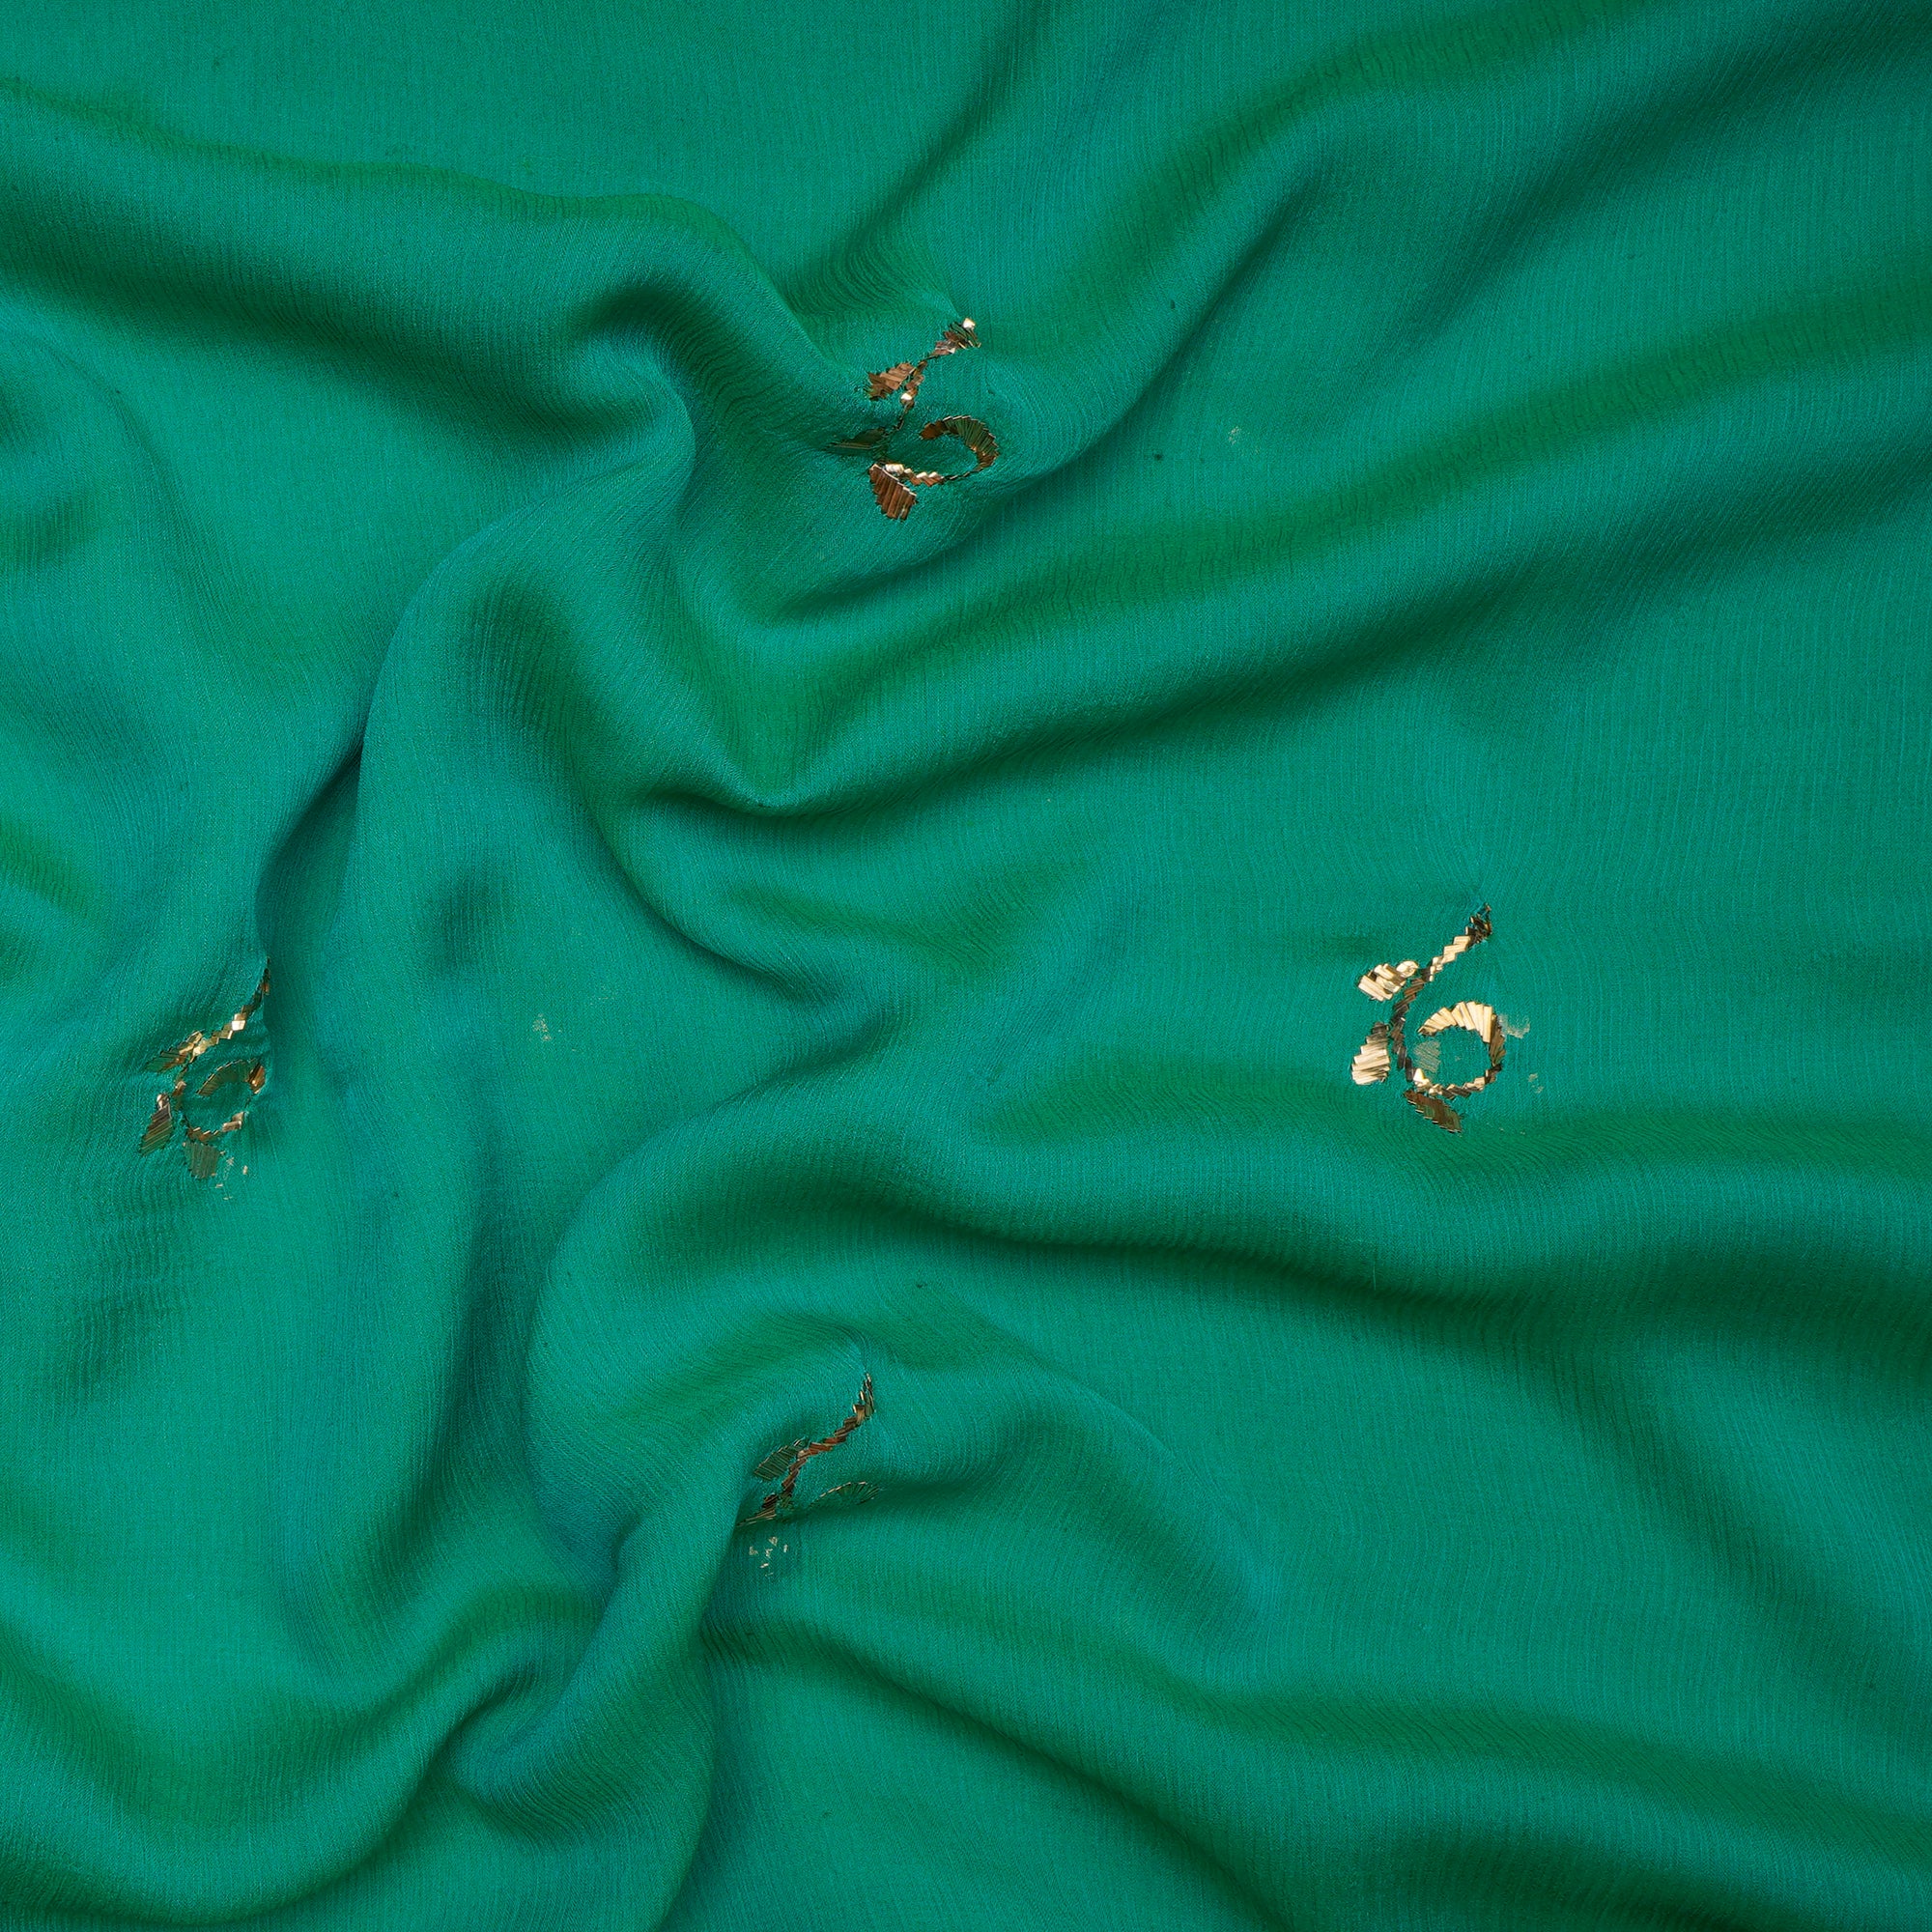 Aquamarine Green Handcrafted Mukaish Work Pure Chiffon Fabric